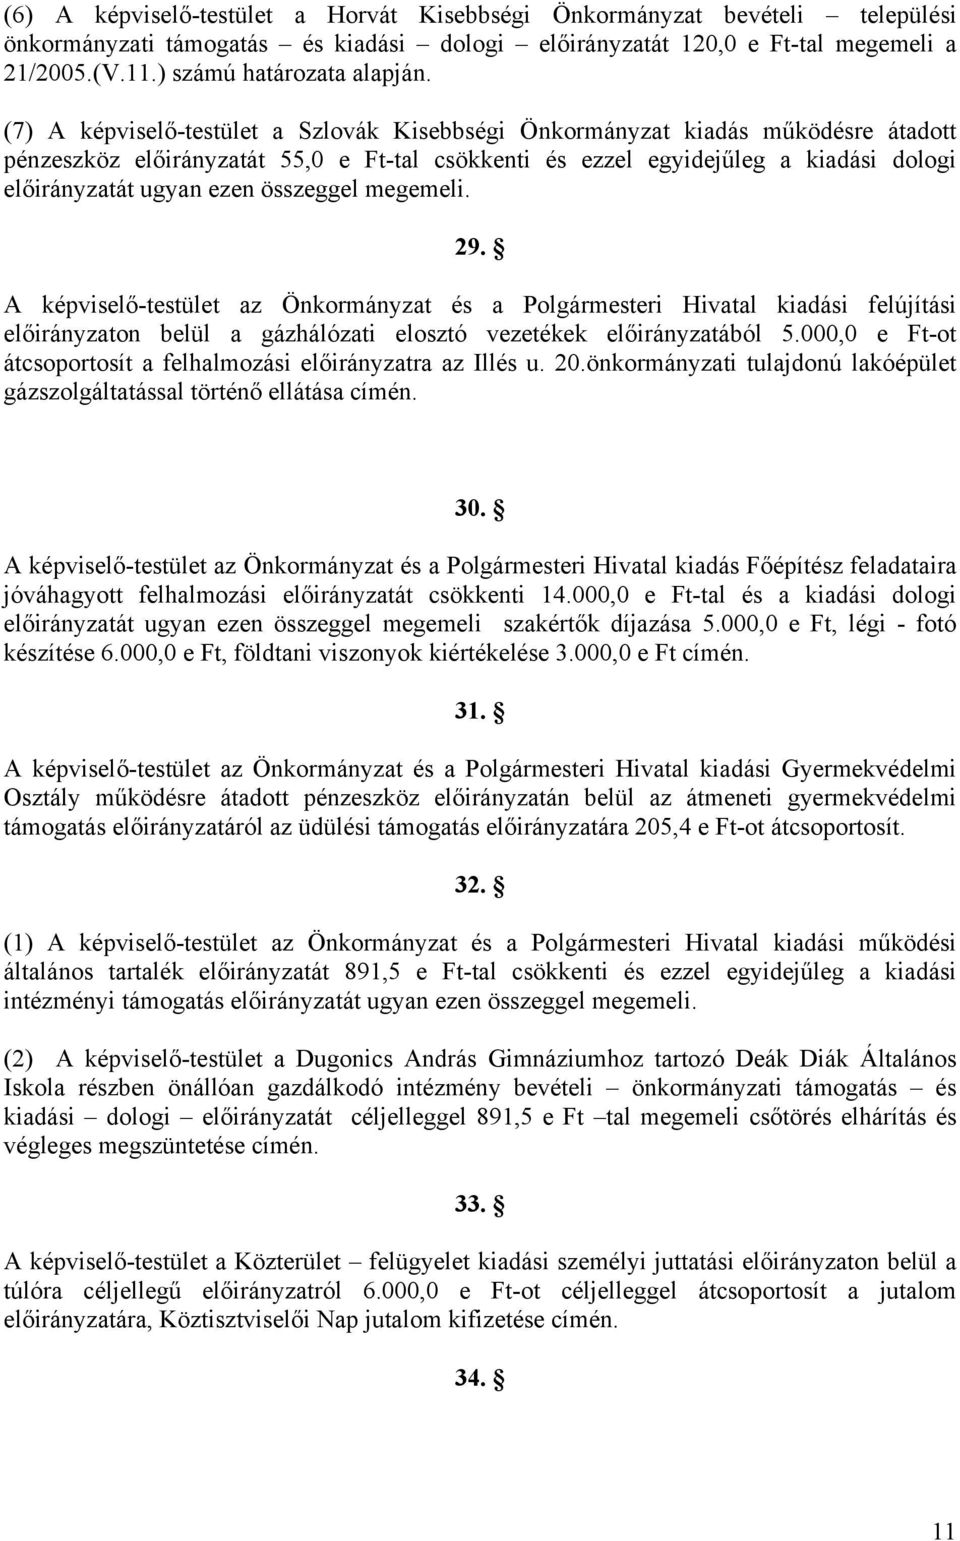 (7) A képviselő-testület a Szlovák Kisebbségi Önkormányzat kiadás működésre átadott pénzeszköz előirányzatát 55,0 e Ft-tal csökkenti és ezzel egyidejűleg a kiadási dologi előirányzatát ugyan ezen